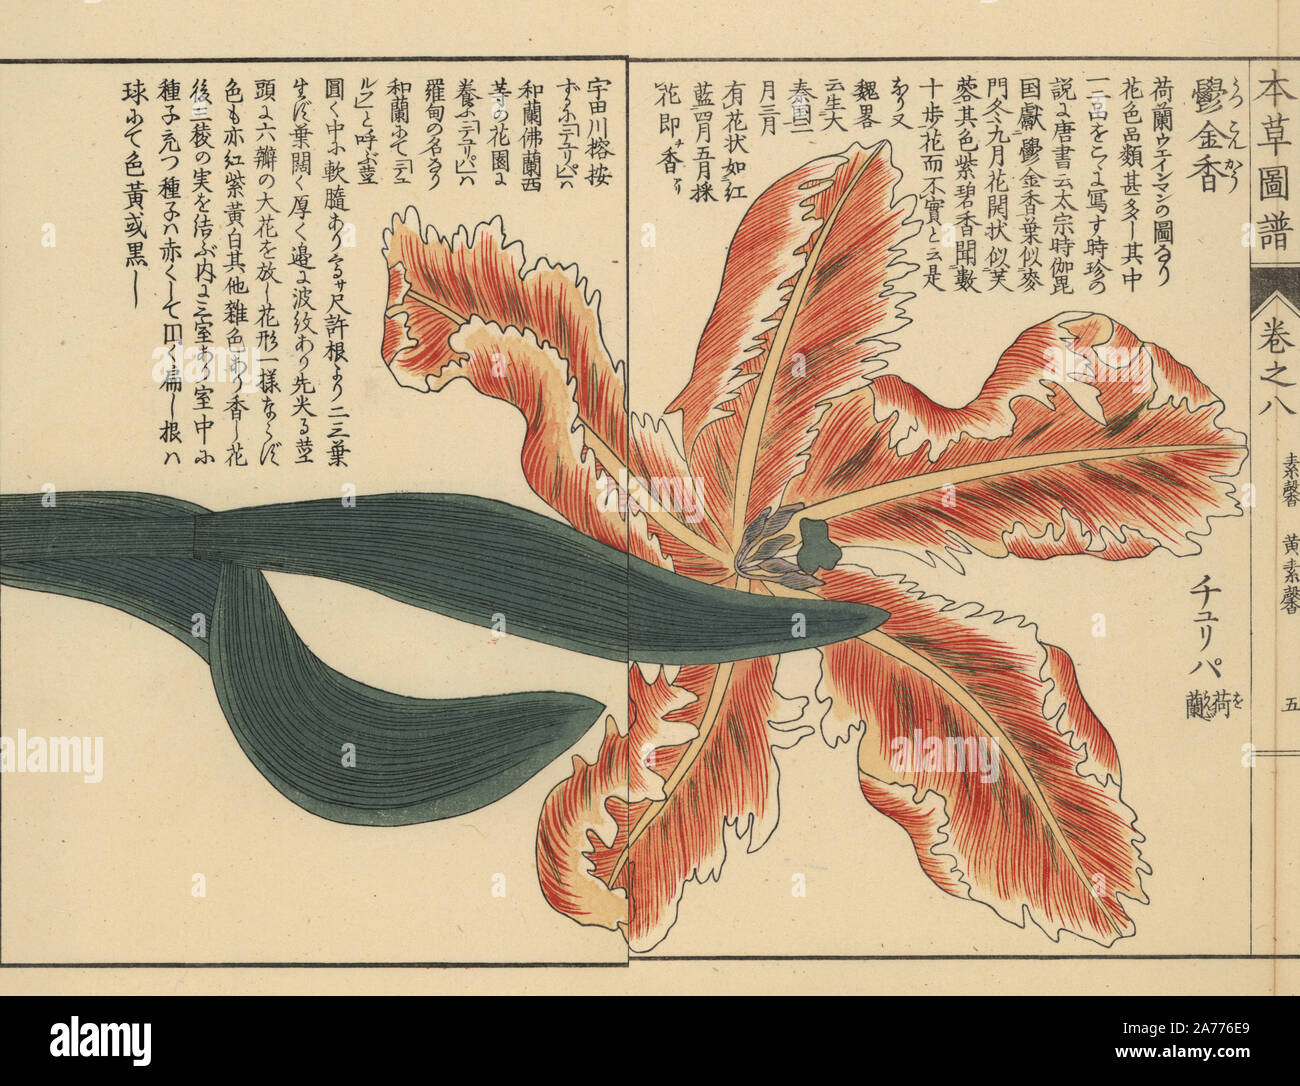 Tulip, Tulipa L. gesneria forma. Stampato a colori woodblock incisione di Kan'en Iwasaki da 'Honzo Zufu", una guida illustrata per piante medicinali, Giappone, 1884. La Iwasaki (1786-1842) era un giapponese botanico, entomologo e zoologo. Egli è stato uno dei primi botanici giapponesi per incorporare la conoscenza occidentale nei suoi studi. Foto Stock